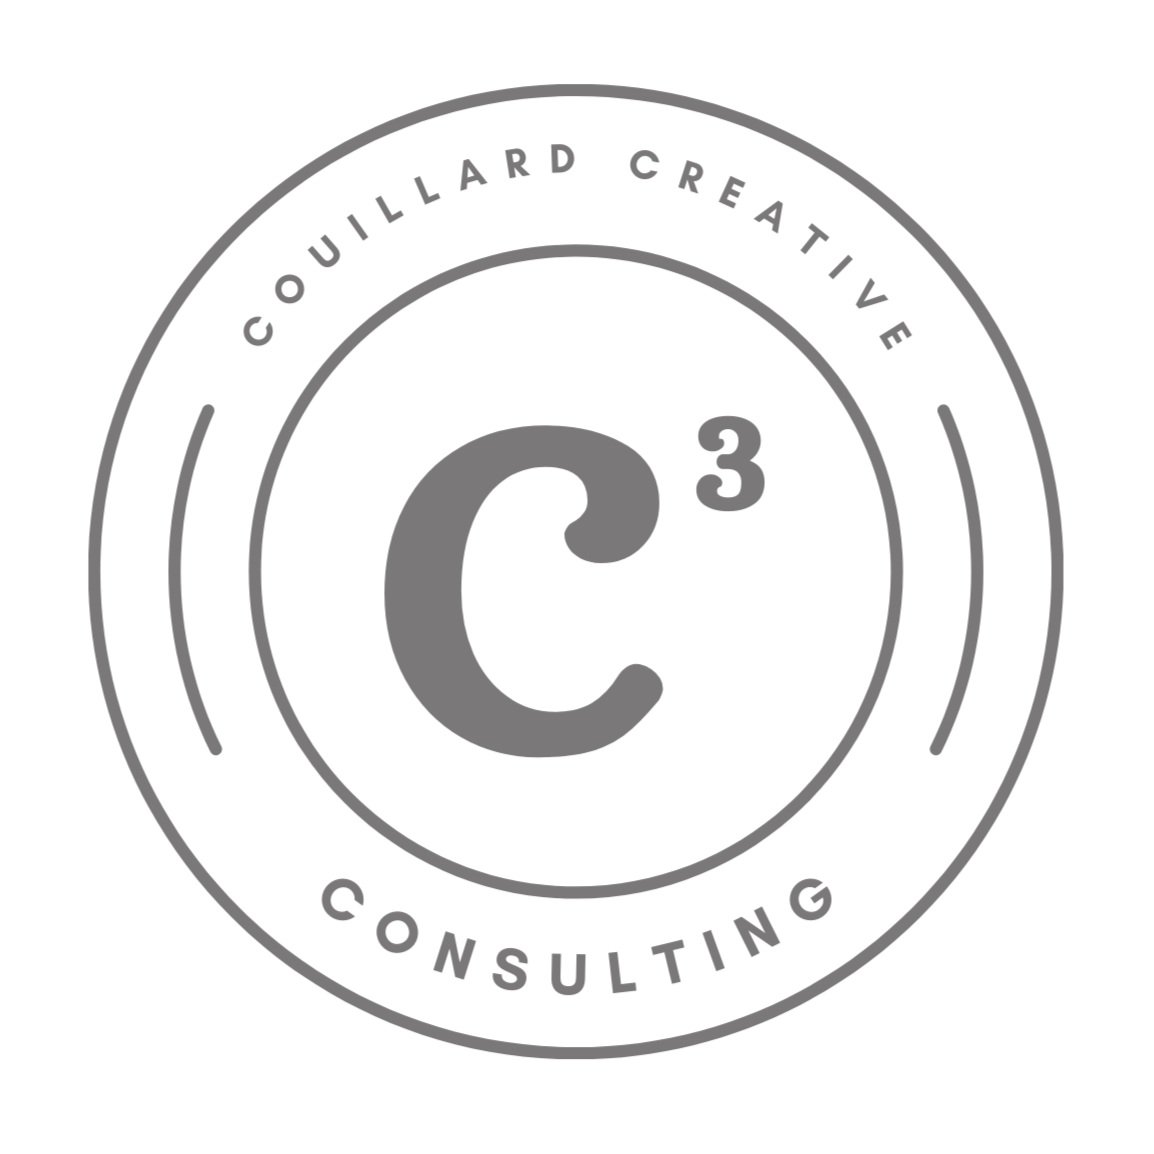 Couillard Creative Consulting (C3)